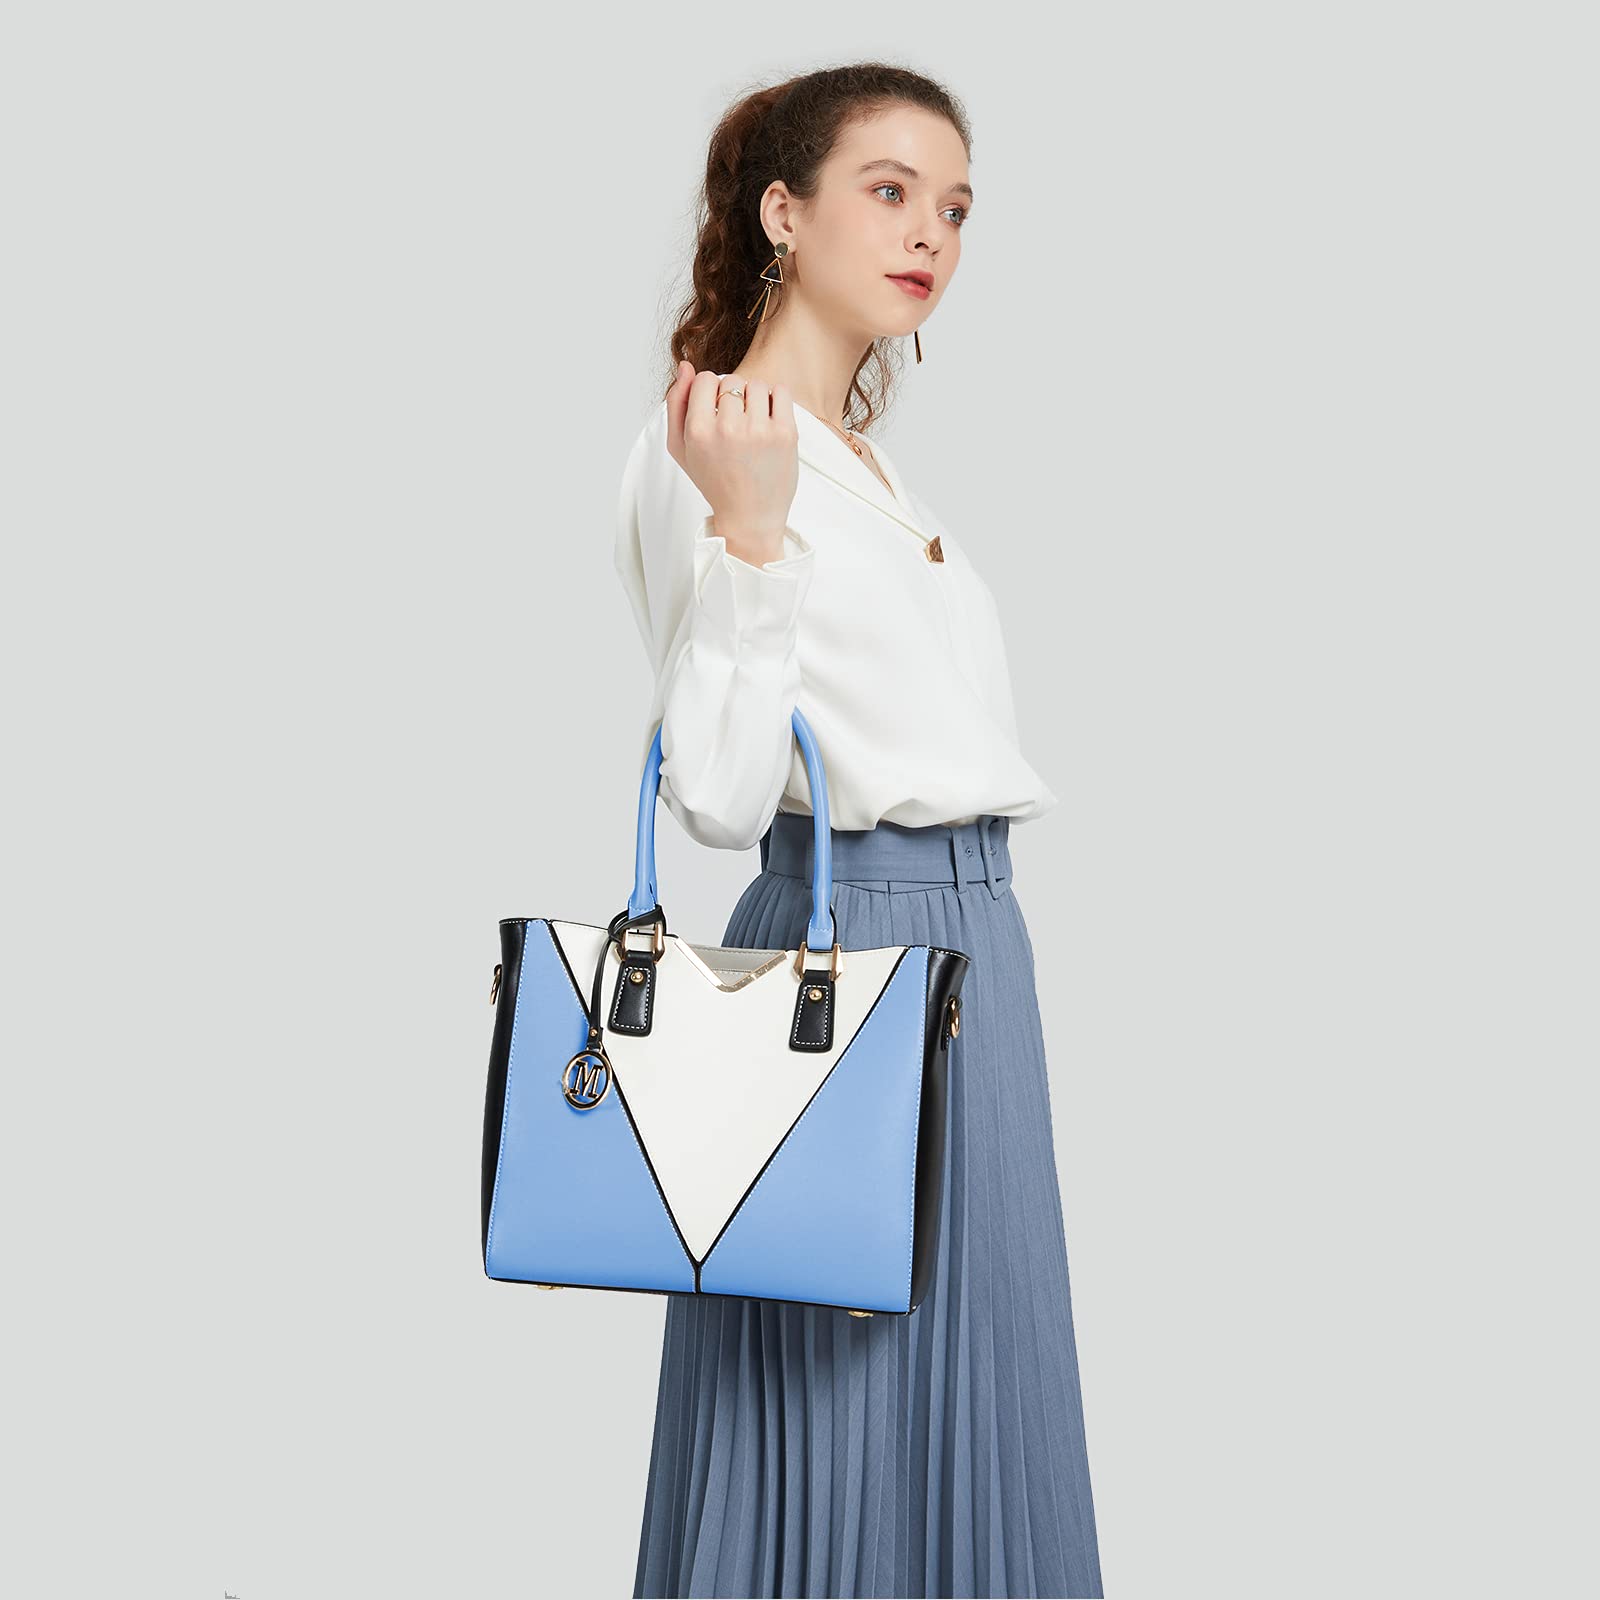 Túi xách nữ Pu Cao Cấp Handle Bag chính VÀ kiểu dáng cổ điển đơn giản thời trang có thể đeo chéo hoặc xách tay - Bảo hành 1 năm